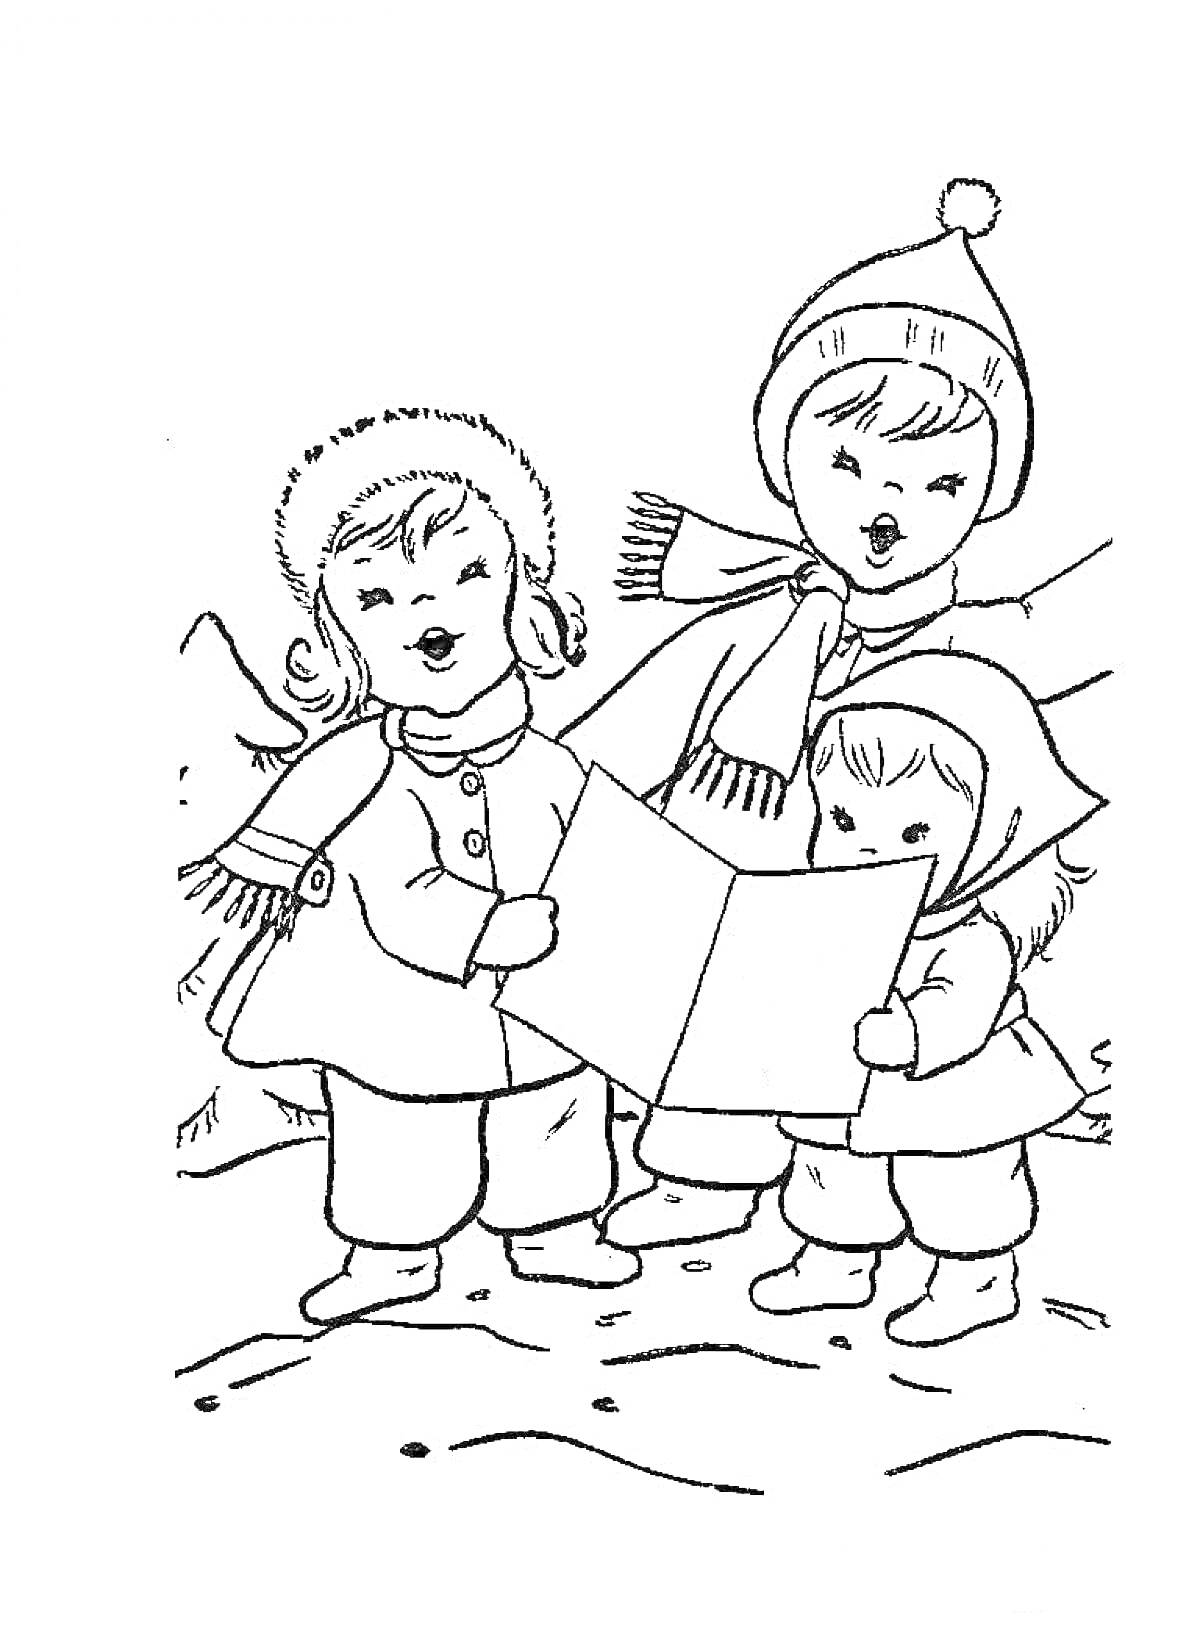 Дети в зимней одежде поют колядки с листом бумаги на улице